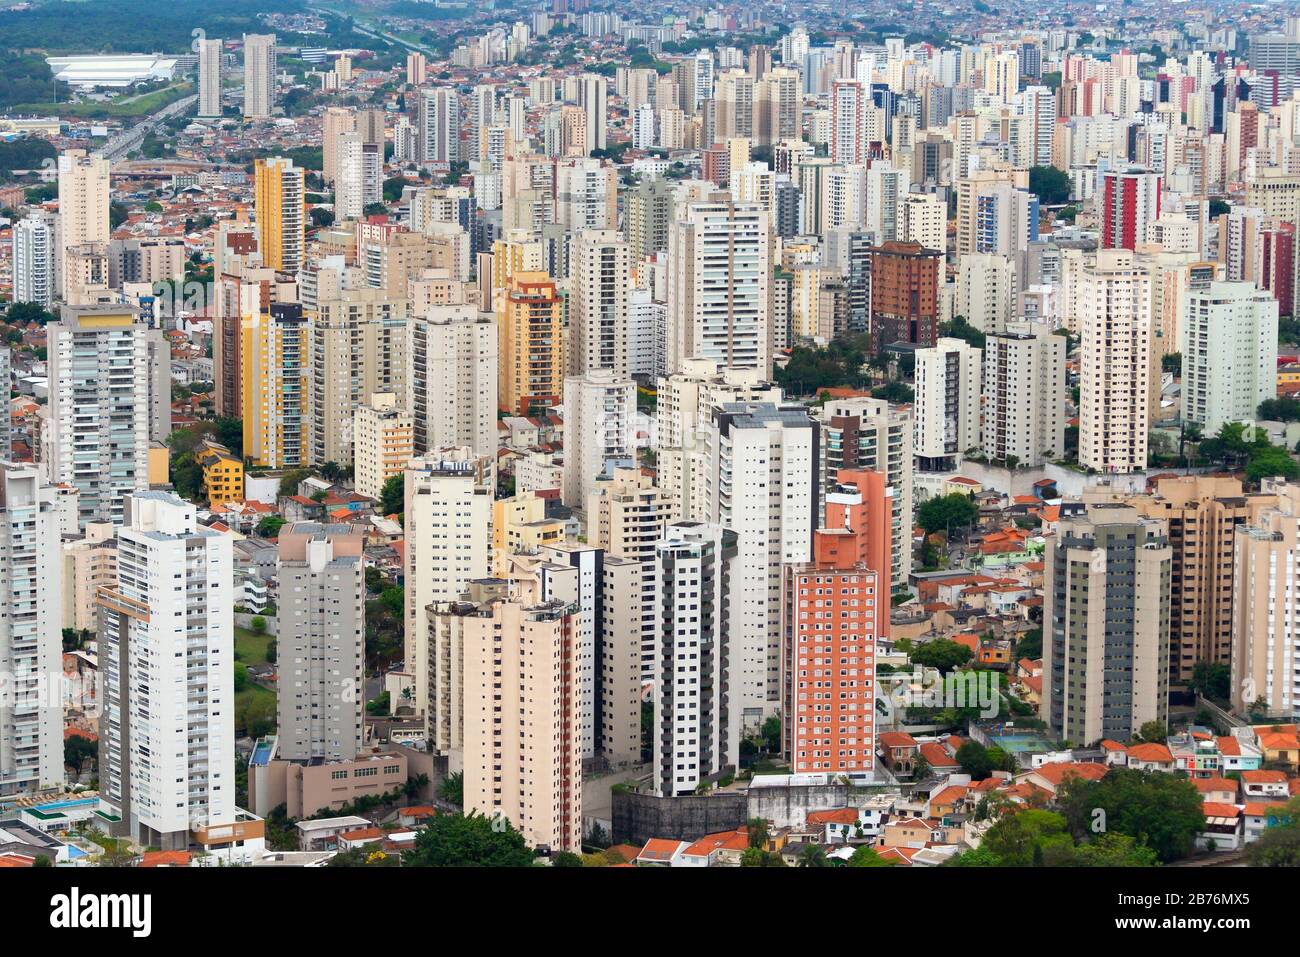 Luftbild des dicht besiedelten Sao Paulo, Brasilien mit mehreren Wohnhochhäusern. Stadt auch als Betondschungel bezeichnet. Stockfoto